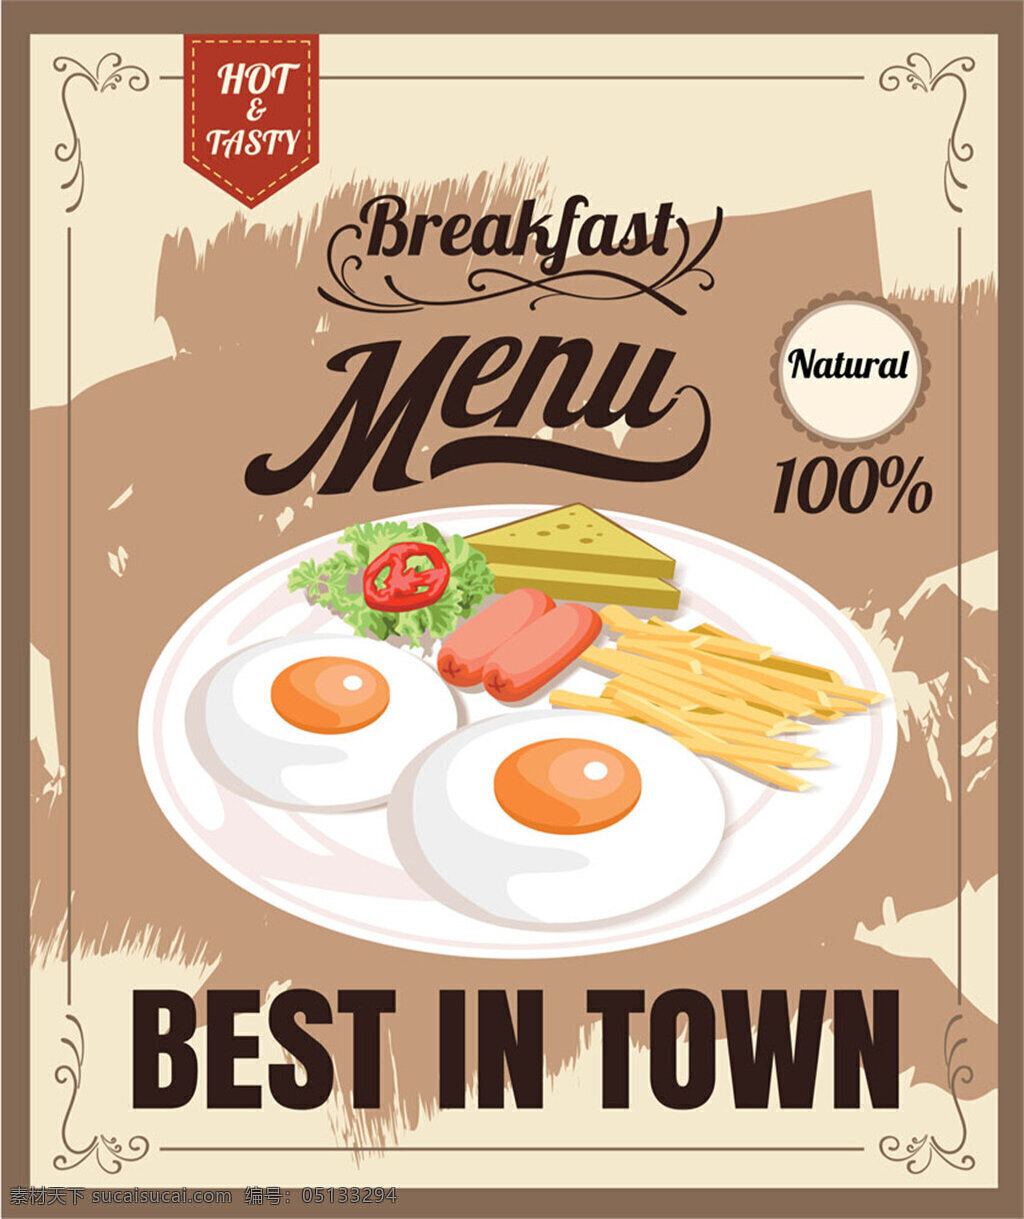 早餐海报 早餐 美食 海报 宣传海报 促销海报 食品海报 餐饮美食 生活百科 矢量素材